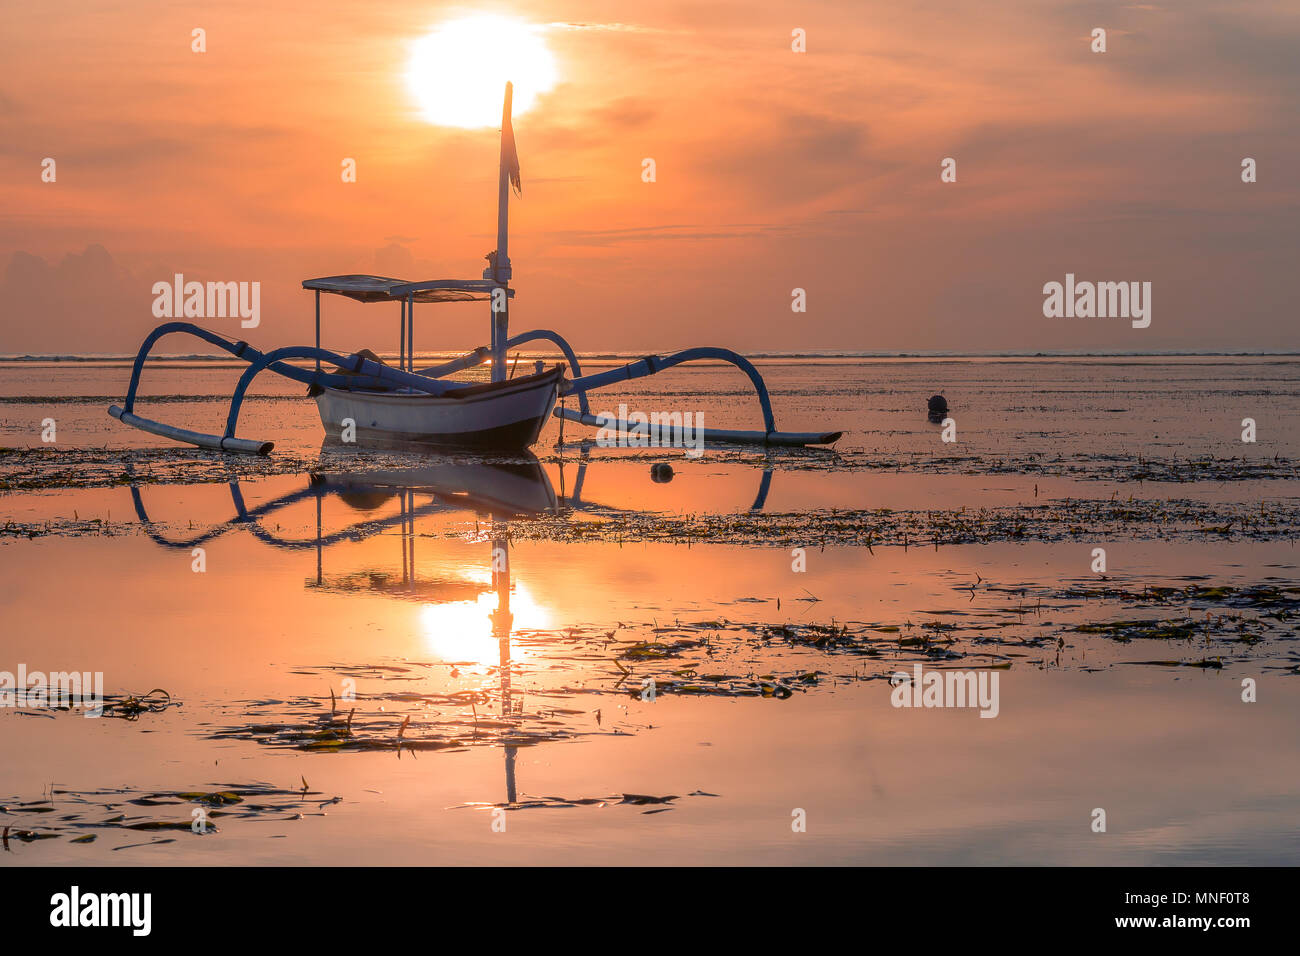 Un balinesian bateau de pêche au lever du soleil, les reflets dans la mer peu profonde, Sanur, Bali, Indonésie, 21 avril, 2018 Banque D'Images